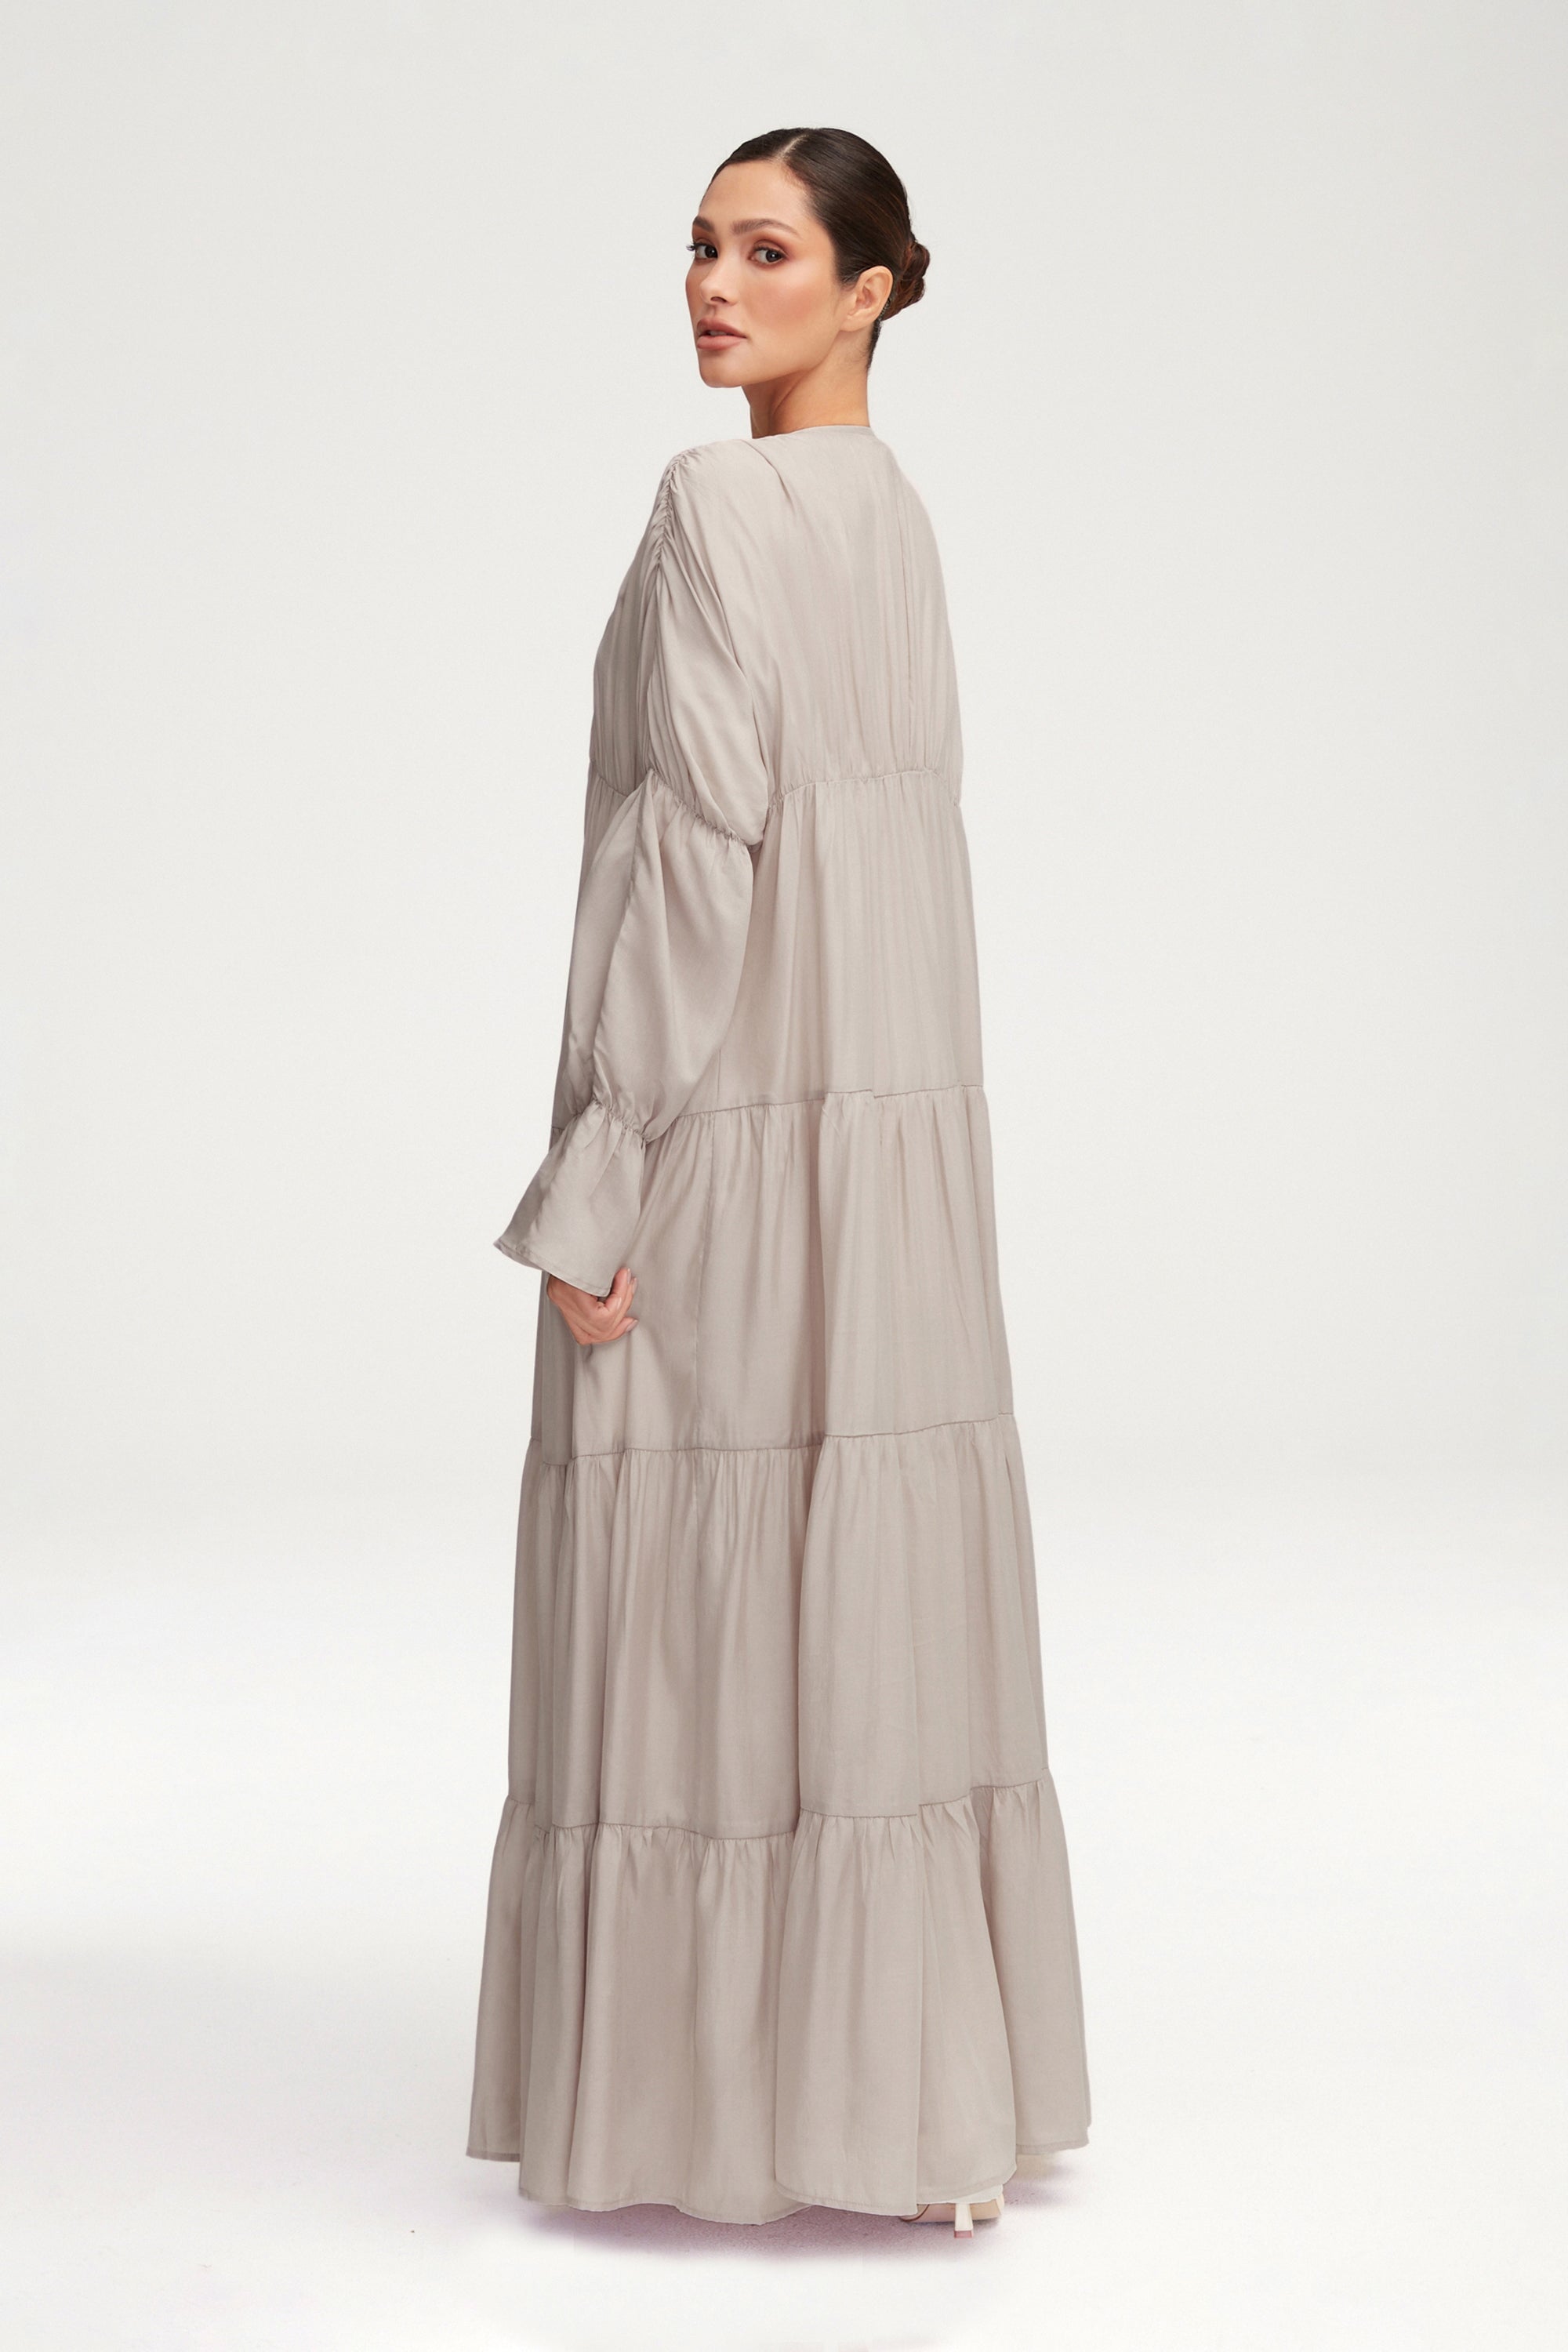 Malika Open Abaya - Cloud Clothing Veiled 